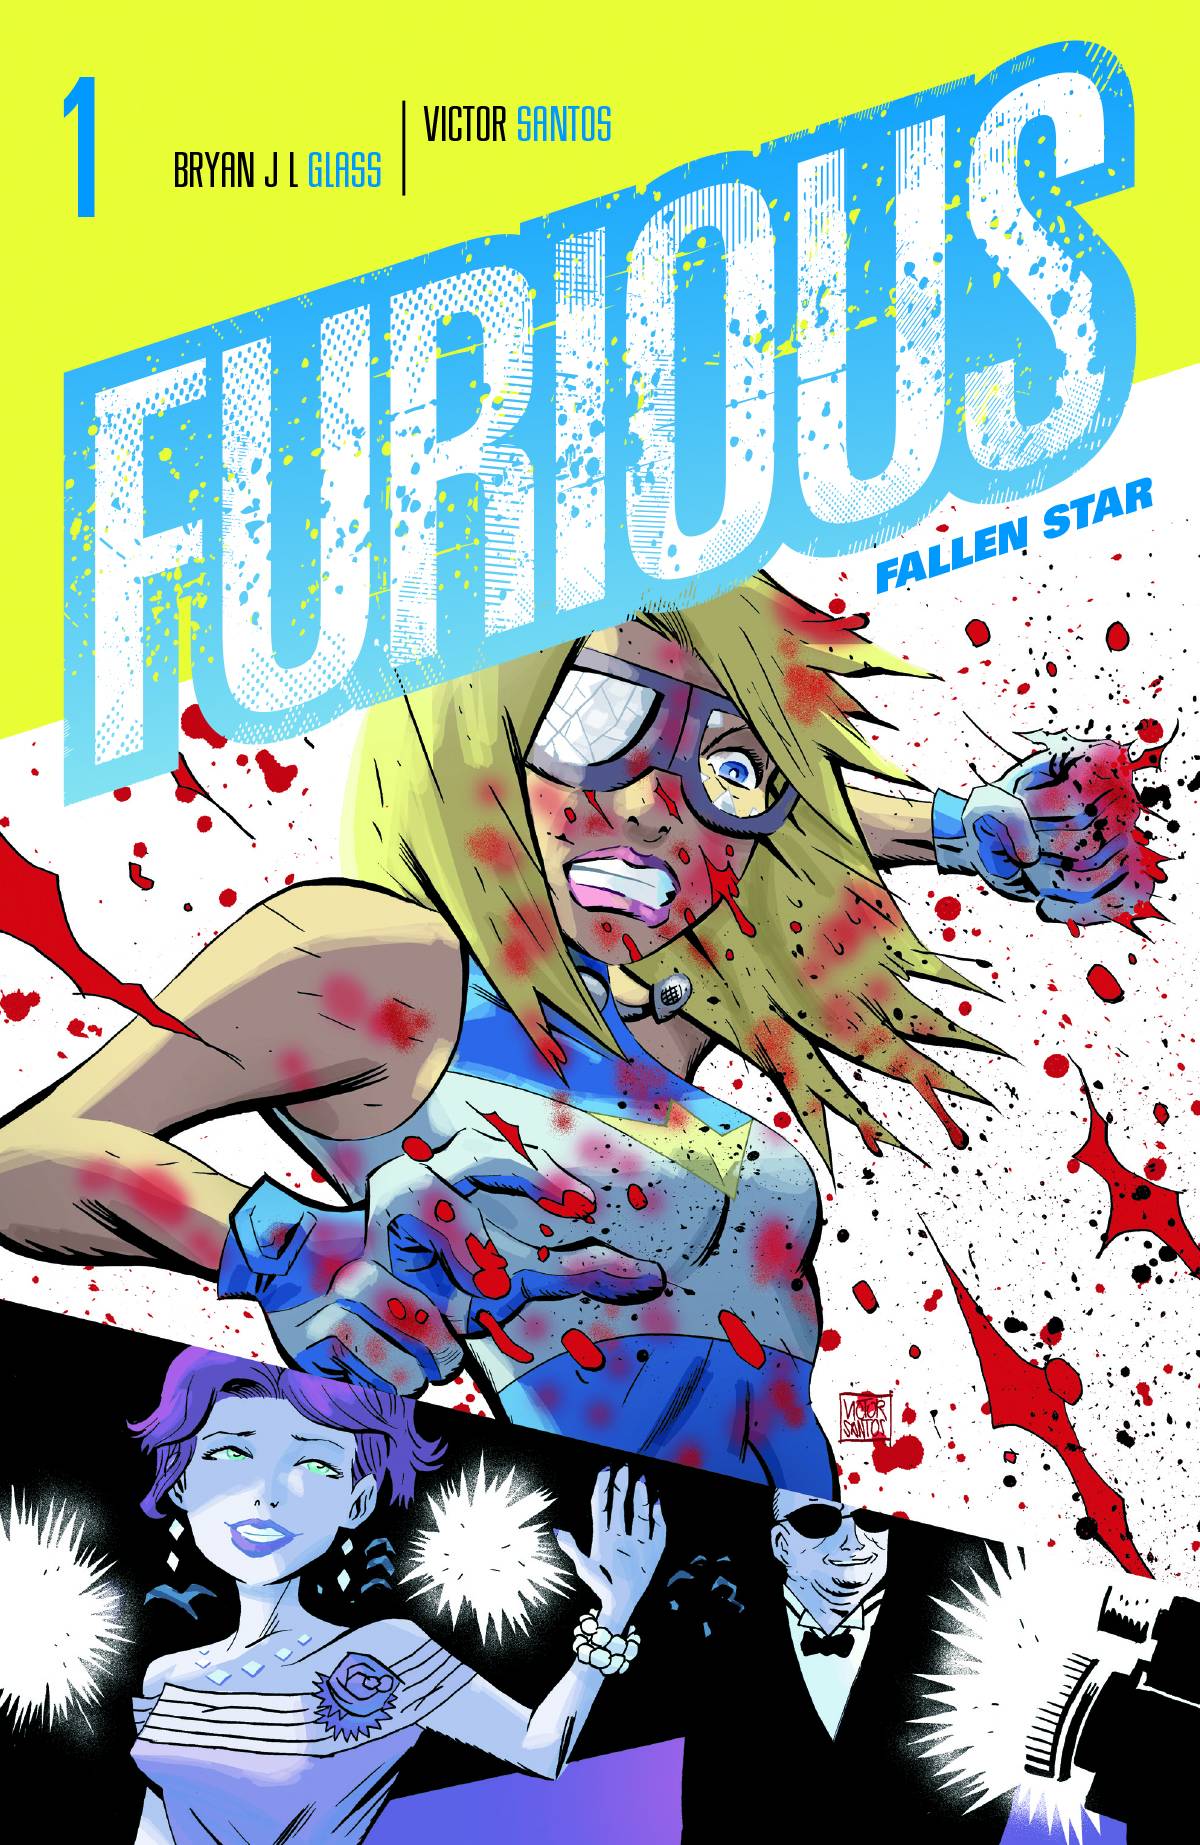 Furious Graphic Novel Volume 1 Fallen Star